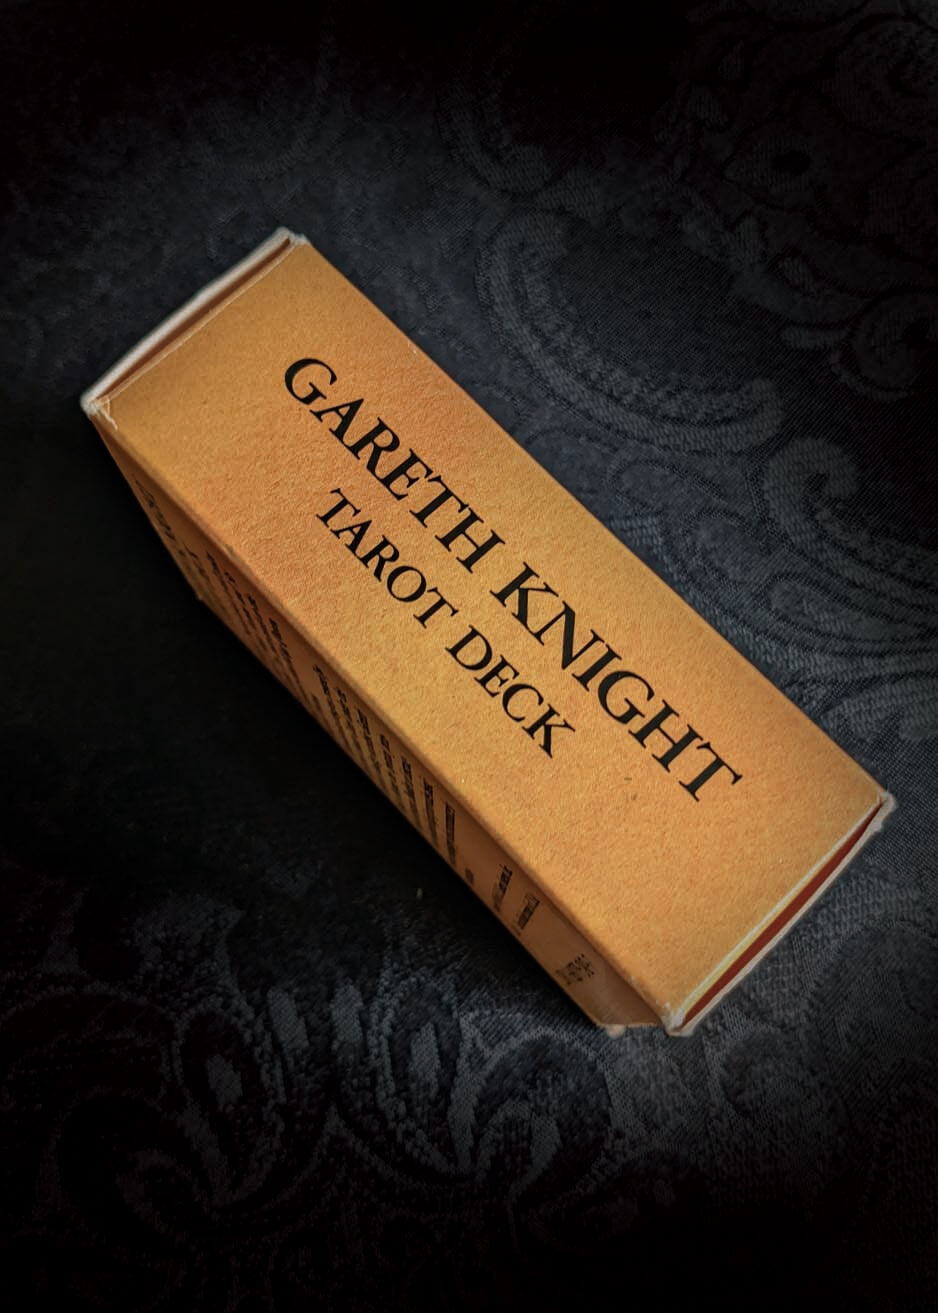 Gareth Knight Tarot Deck – Hester's Occult